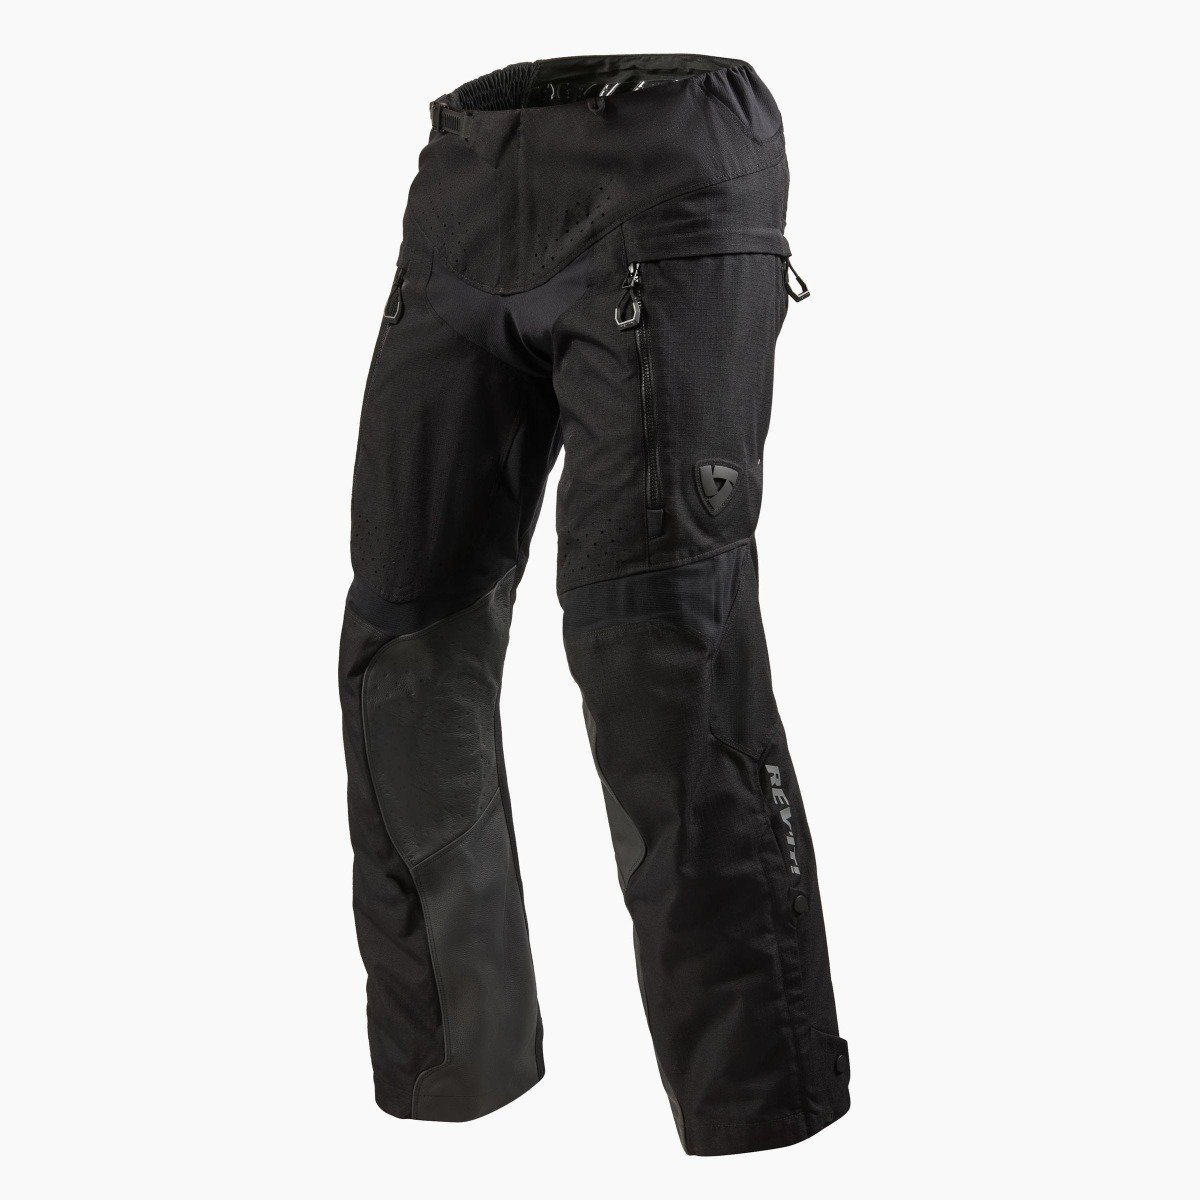 Image of REV'IT! Continent Short Black Motorcycle Pants Size M EN